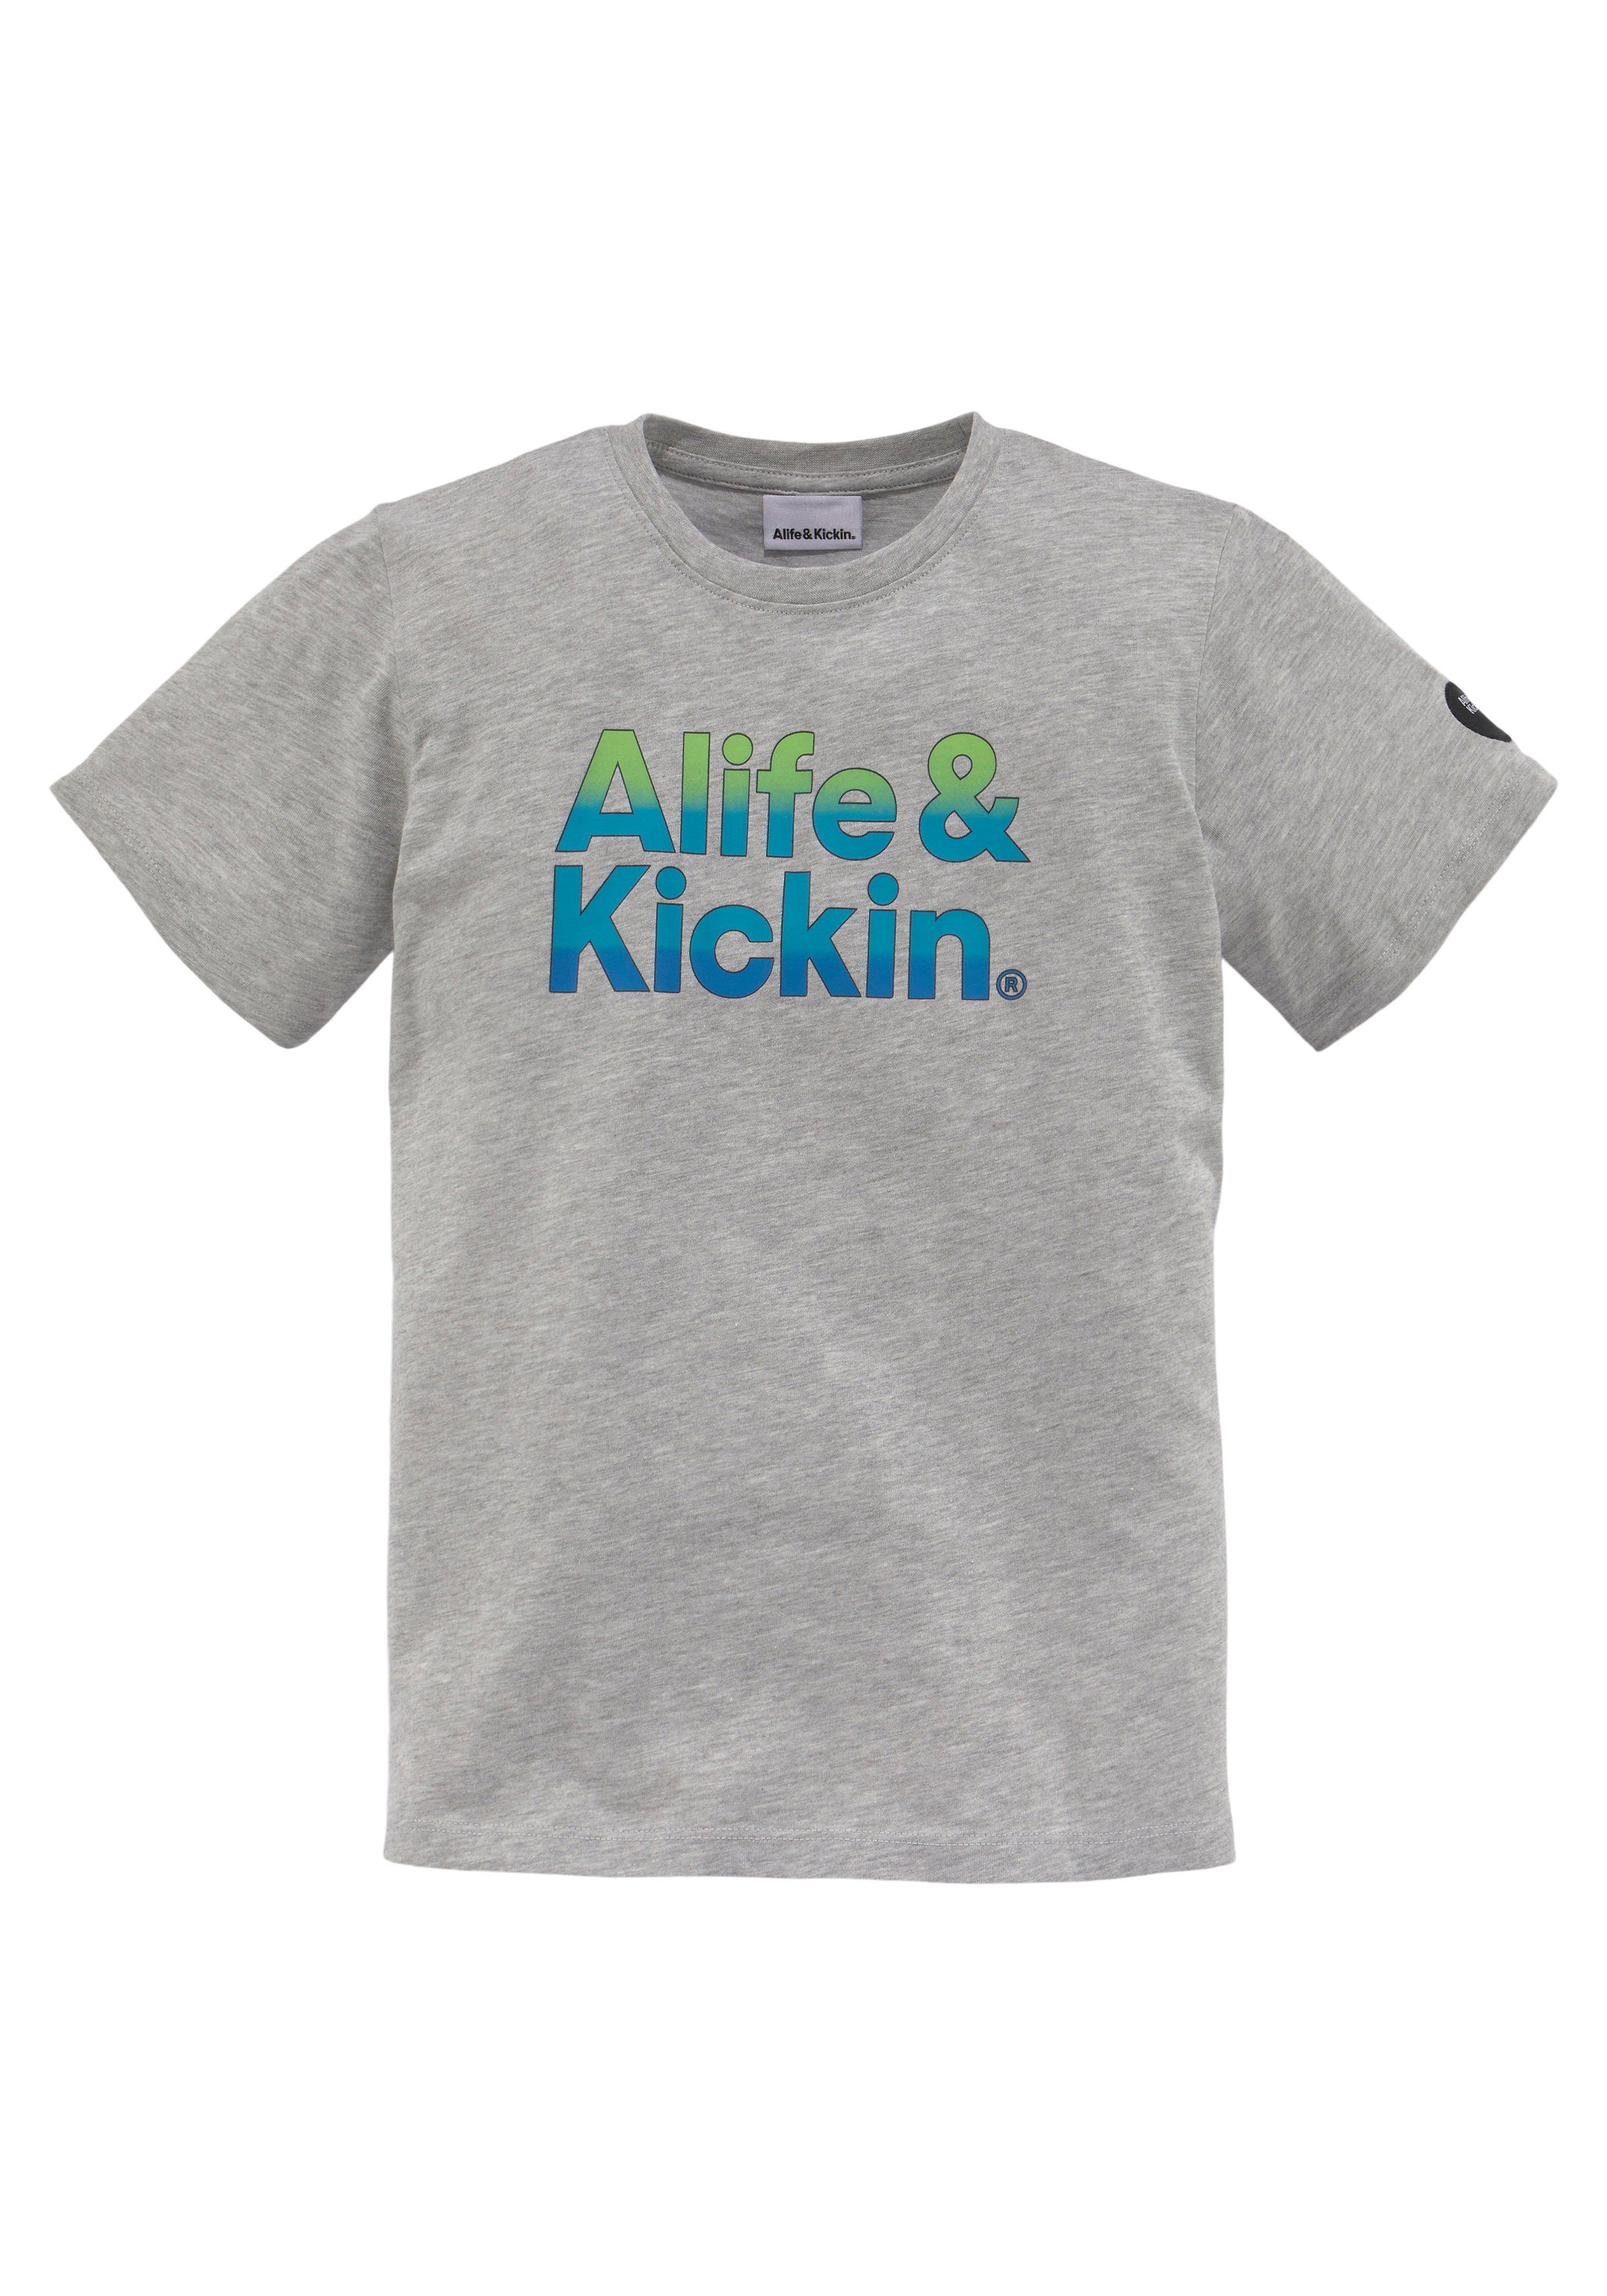 T-Shirt Alife&Kickin in Alife NEUE MARKE! Logo-Print Qualität, für Kids melierter Kickin &